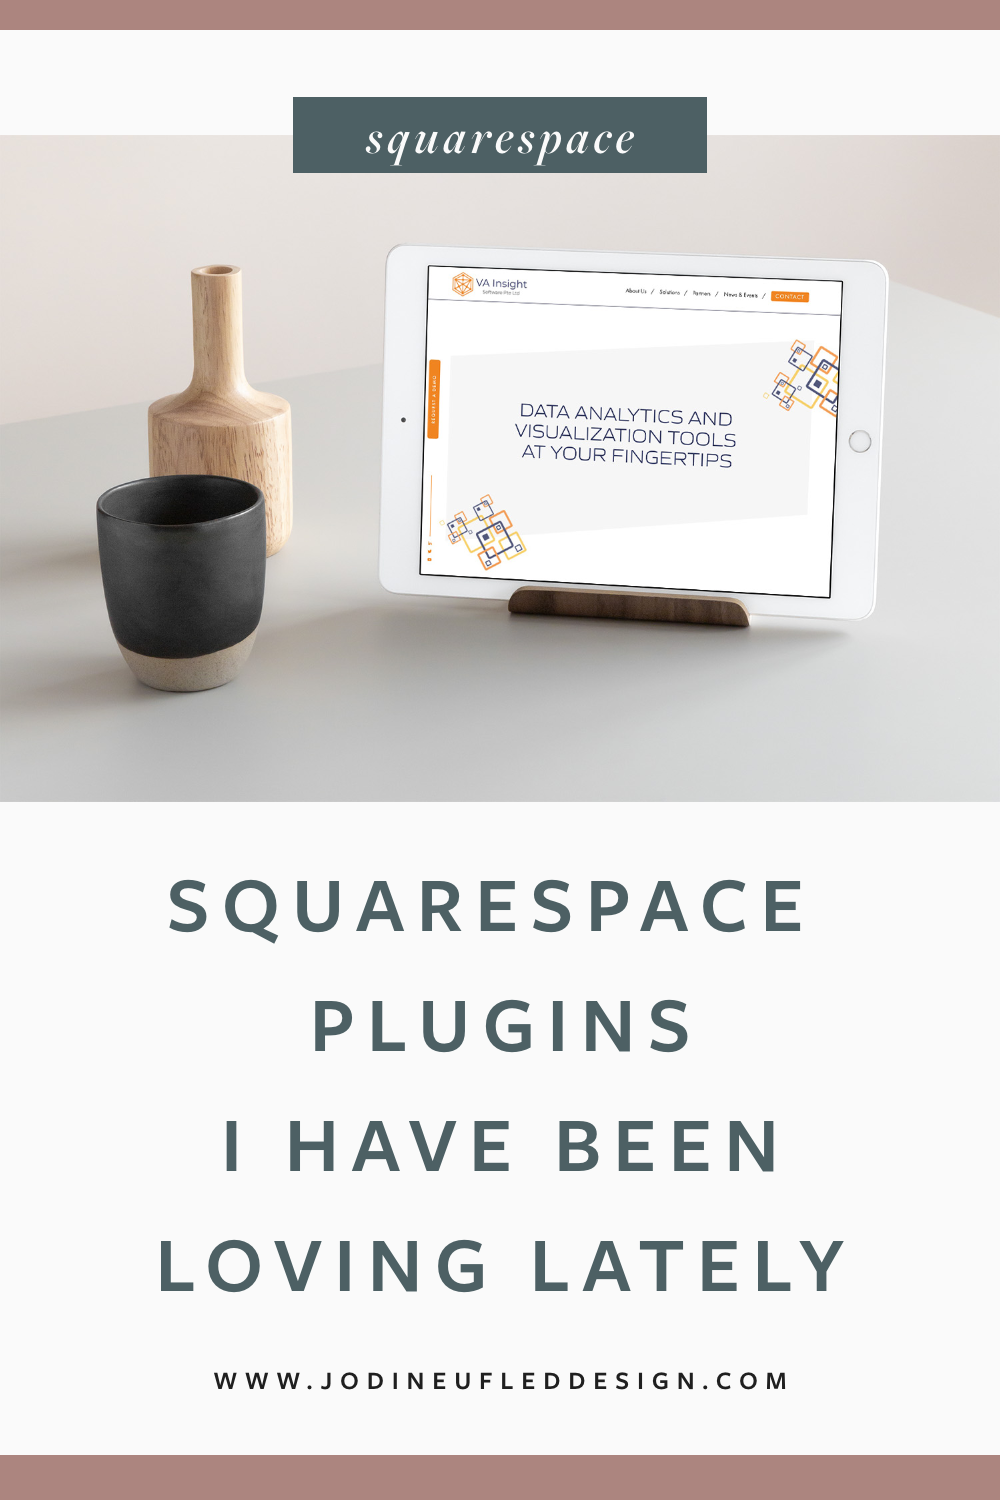 Squarespace plugins post graphic | Jodi Neufeld Design Squarespace web designer